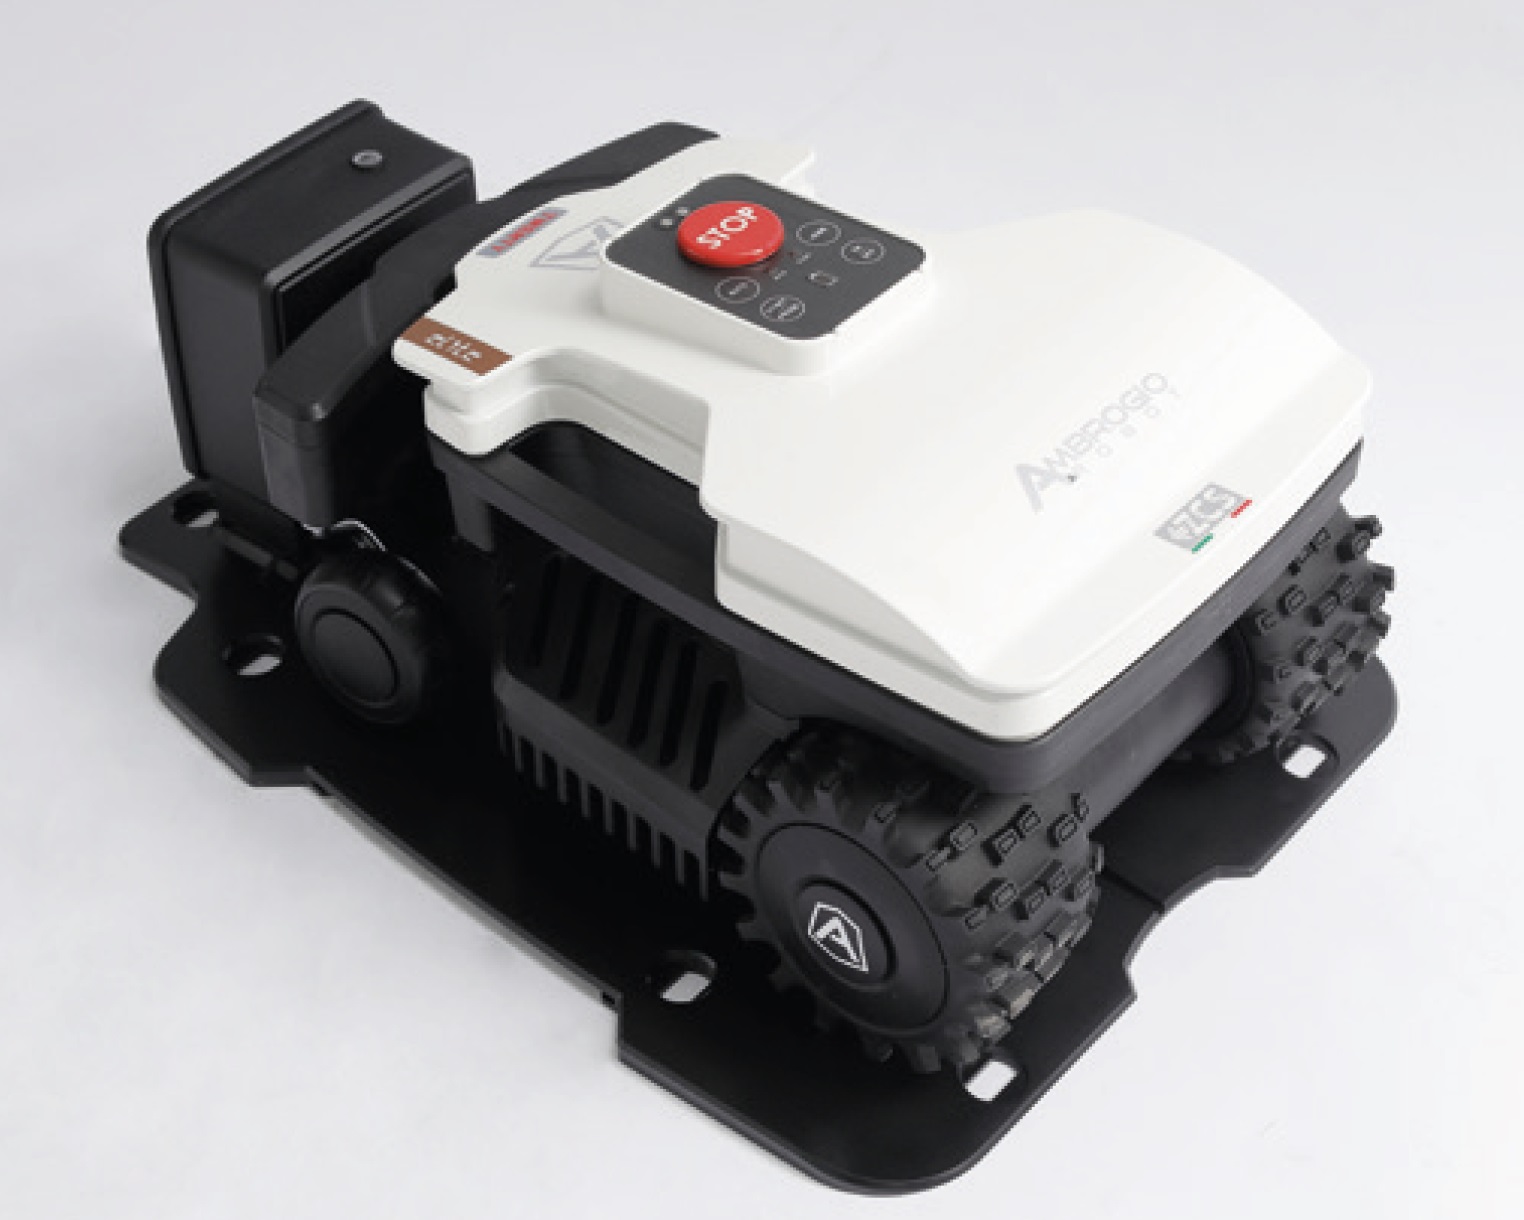 Ambrogio Twenty Elite Robotic Lawnmower RRP £1549